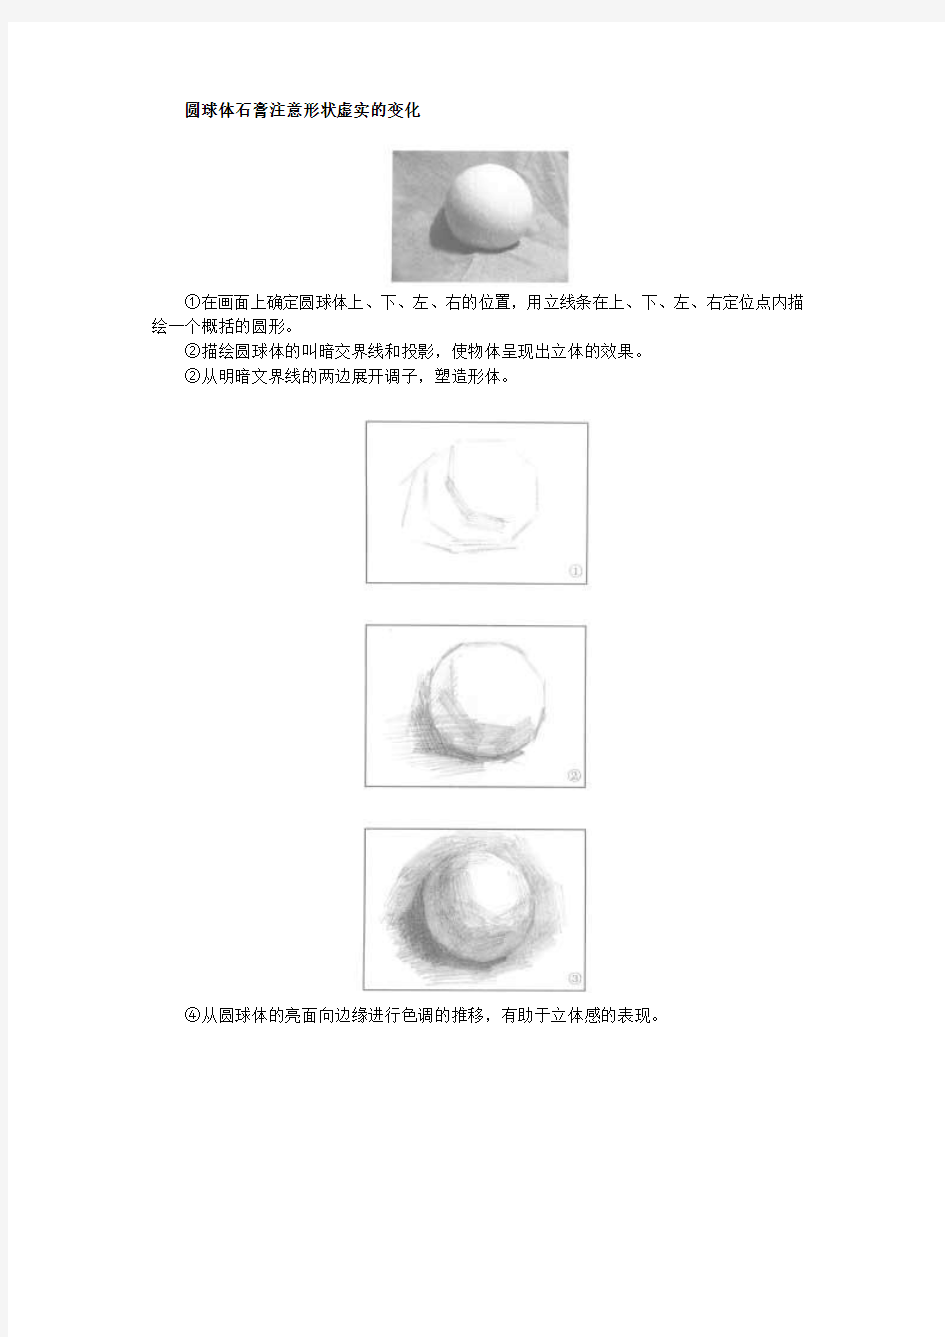 美术素描圆球体石膏注意形状虚实的变化